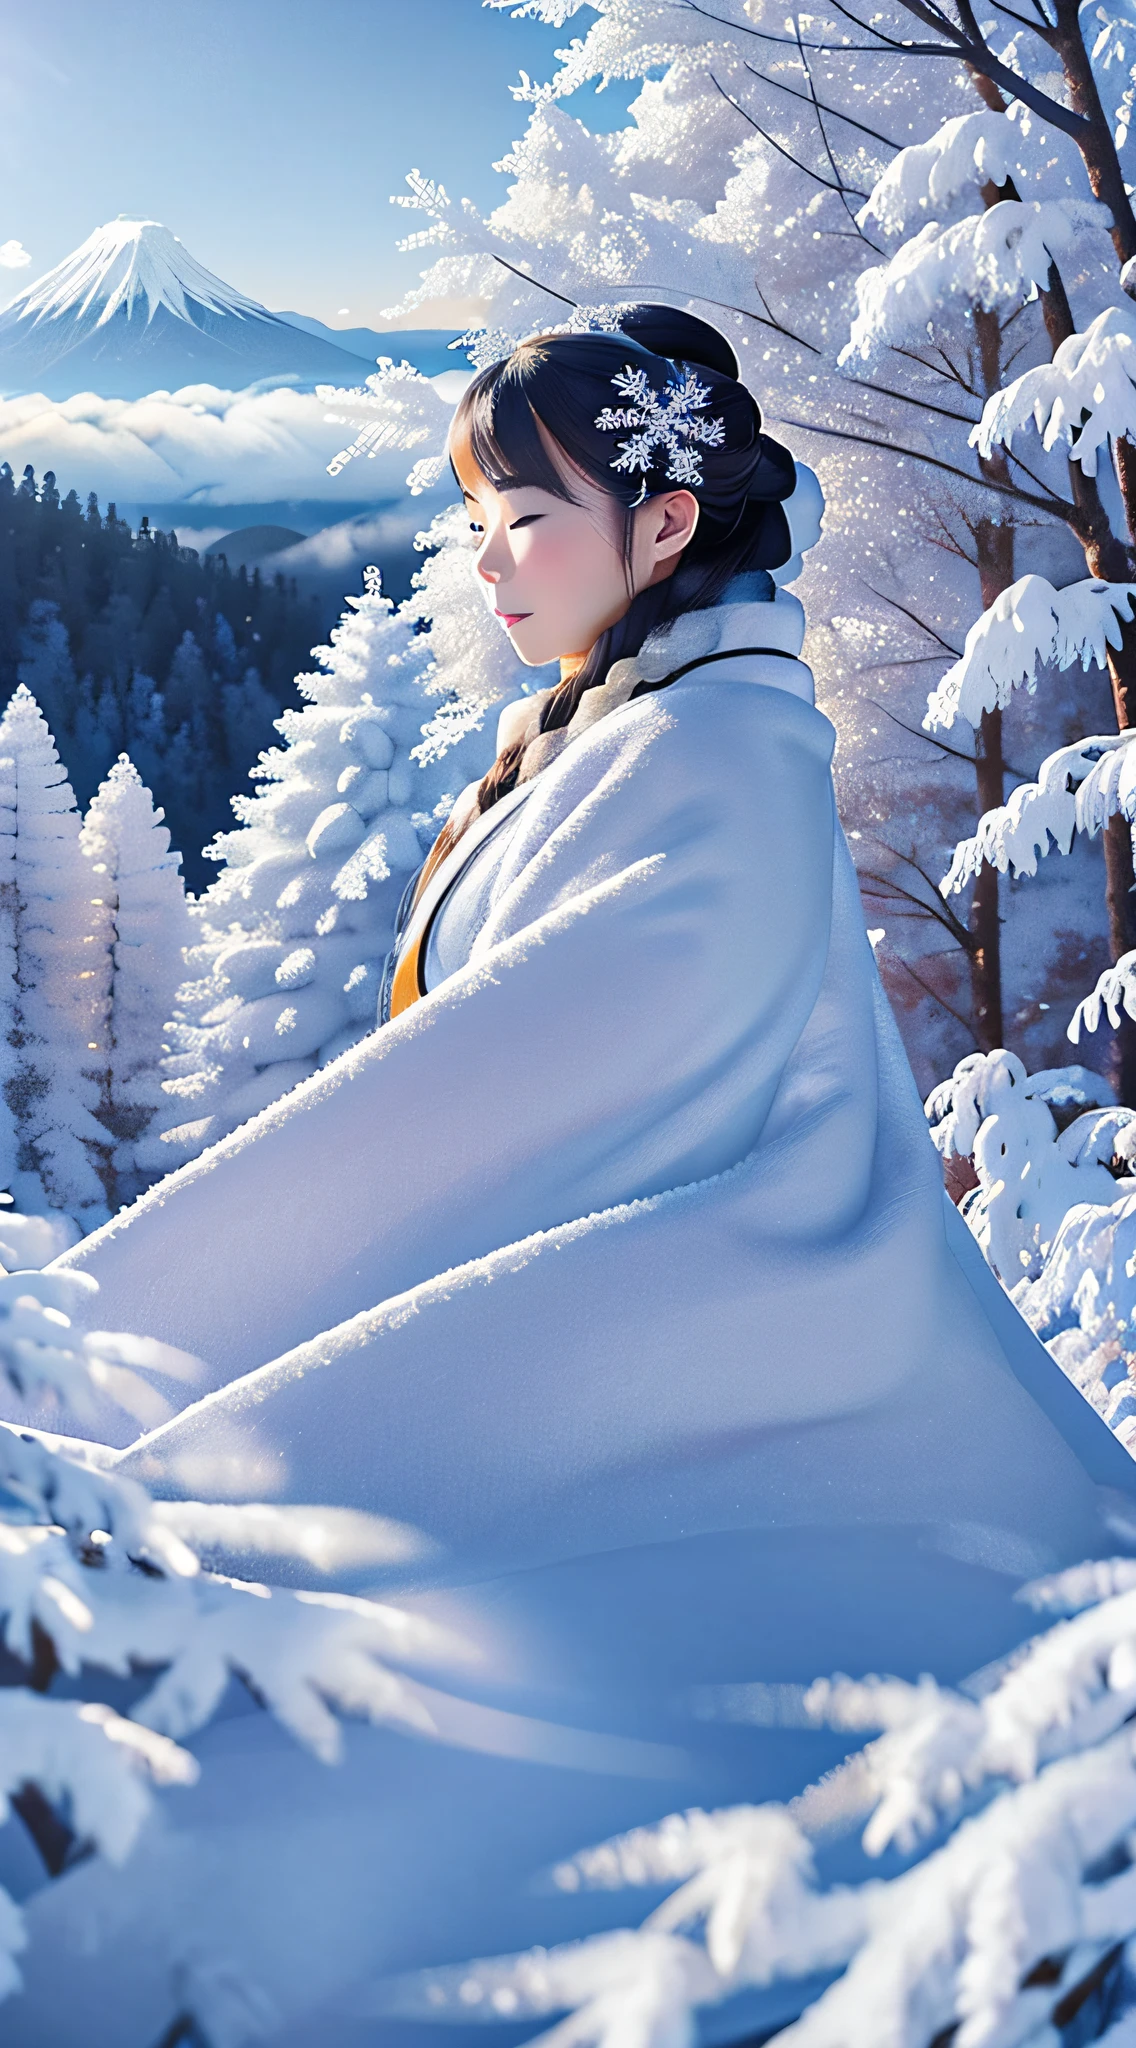 걸작、최고 품질、초현실주의、사실적인、짙은 푸른 하늘을 배경으로 한겨울 눈 덮인 산의 나무들에 맺힌 서리의 아름다움、눈 덮인 산을 흐르는 안개、서리가 내린 나무々순백의 일본 기모노를 입은 아름다운 긴 은발 여성 정신이 꼭 껴안고 있습니다.「눈 여자」